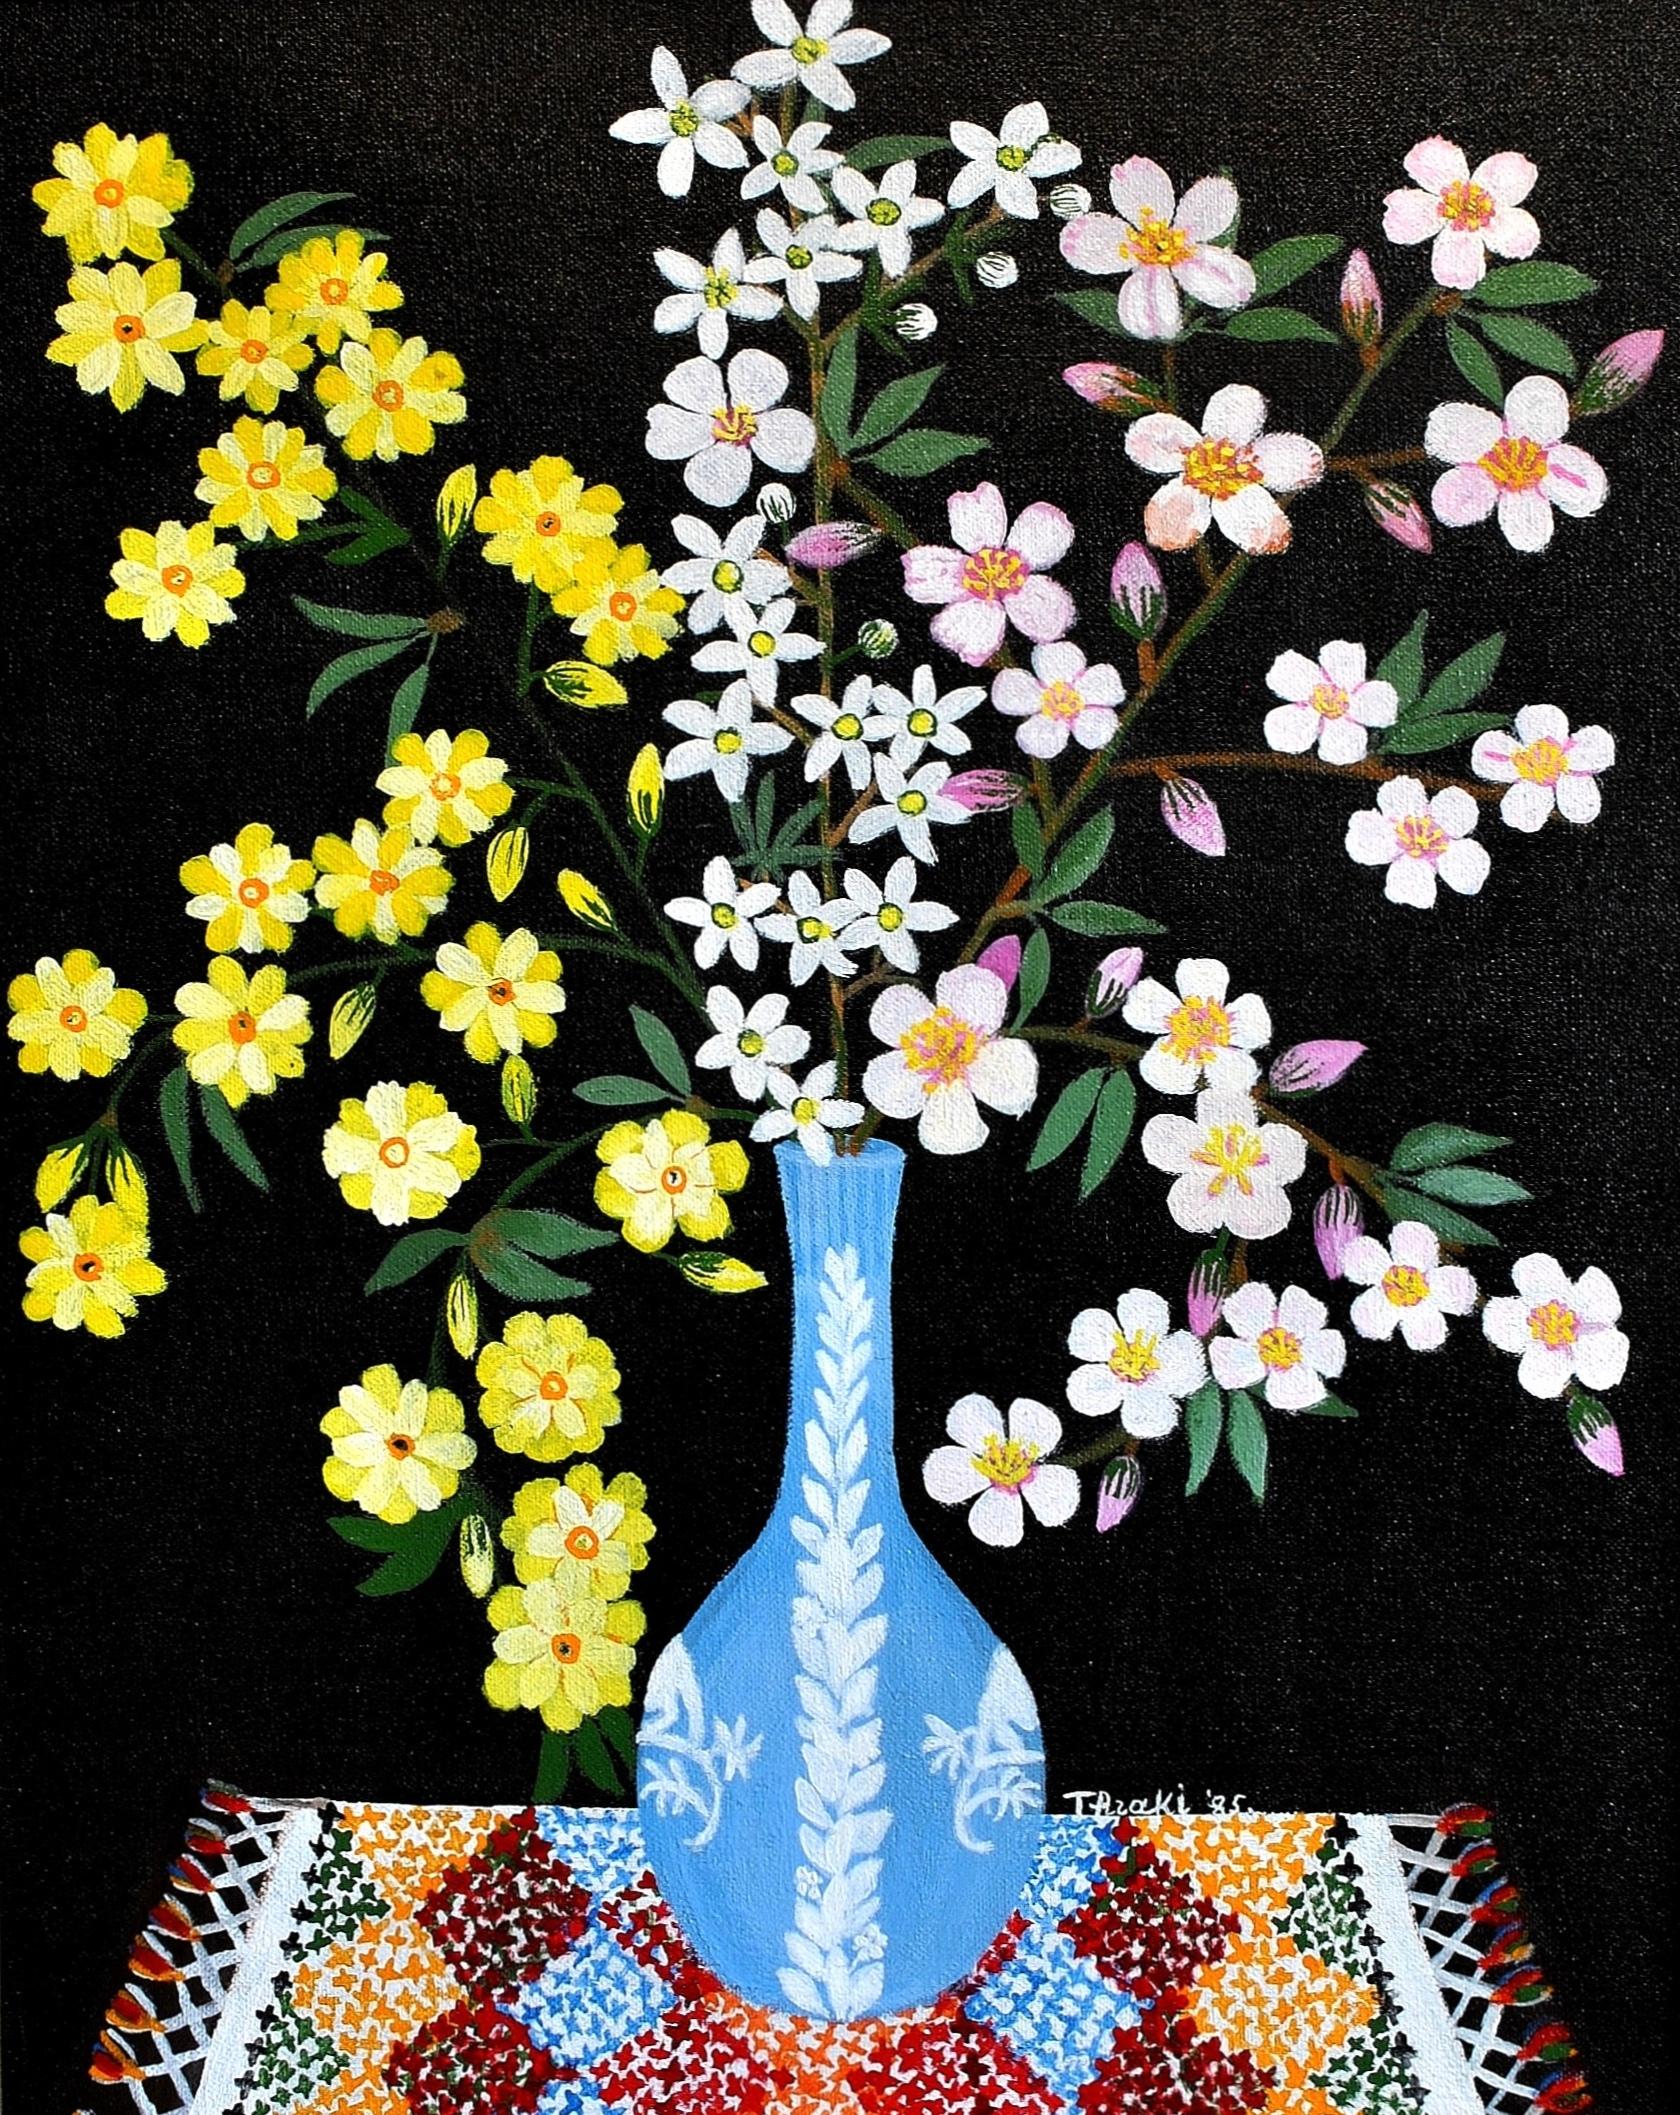 Frühlingsblüte in einer Wedgwood Vase - Naïf Zyprische Blumen Stilleben Gemälde – Painting von Thraki Rossidou Jones